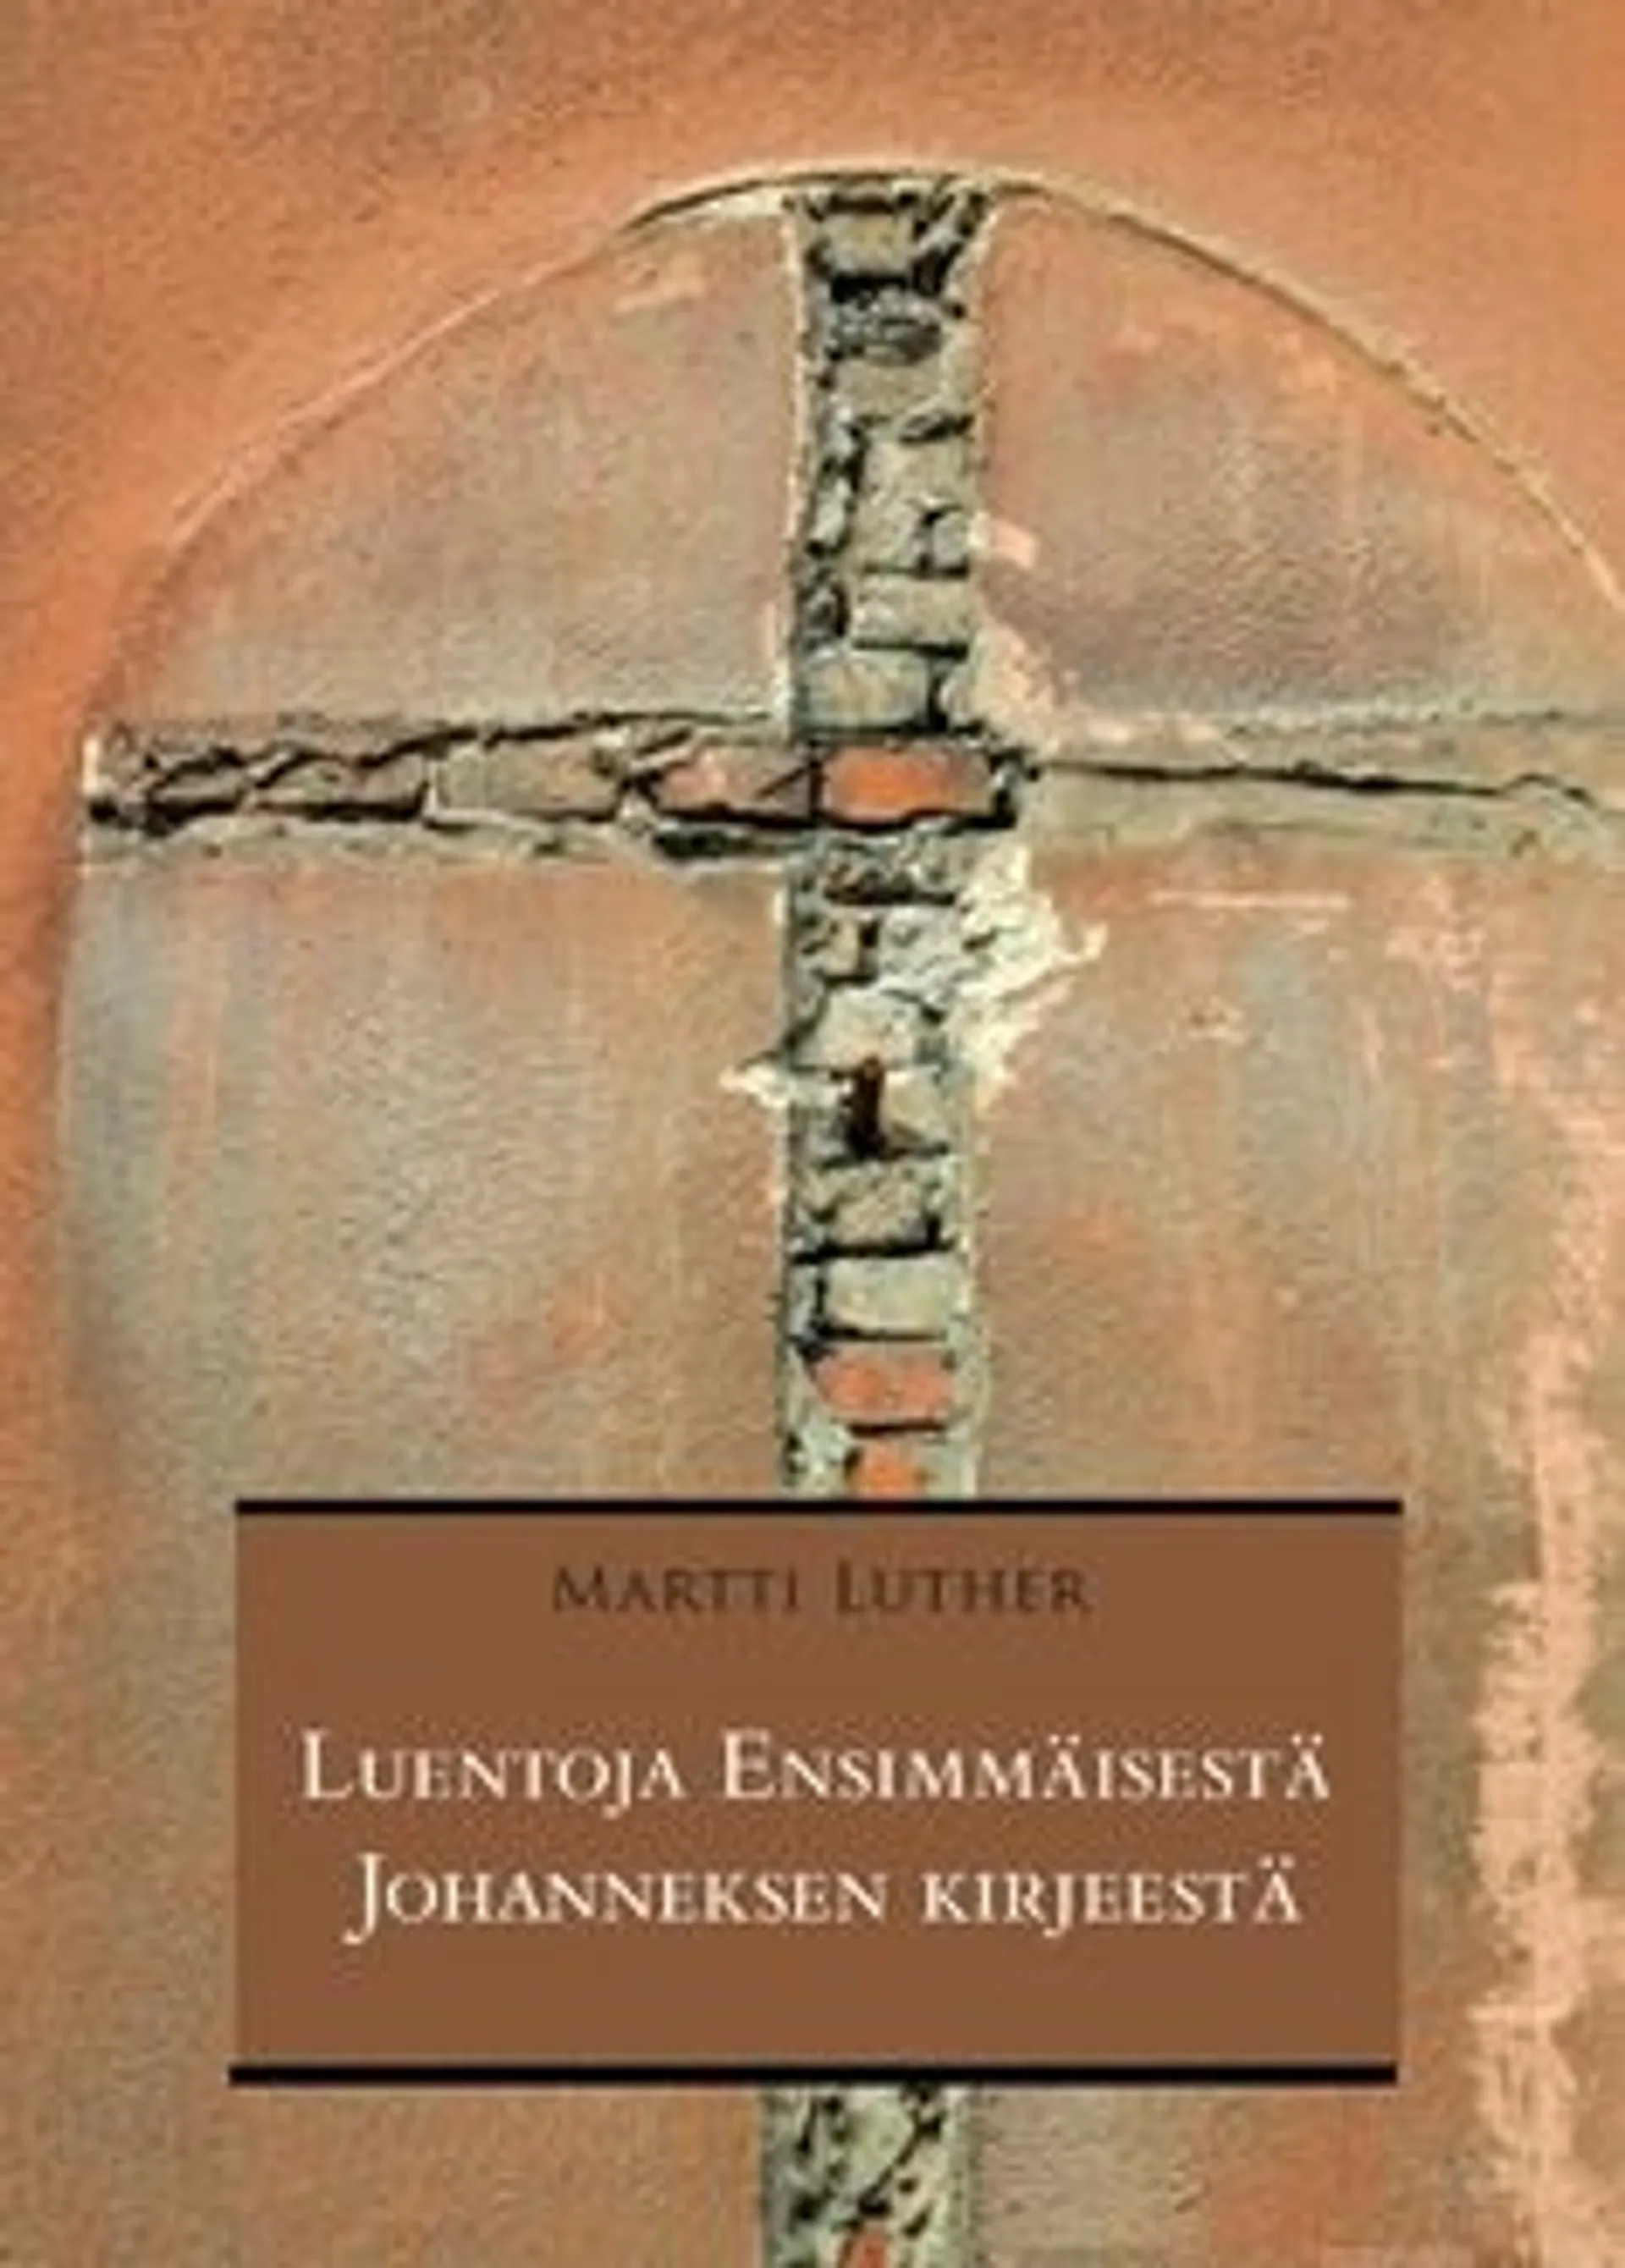 Luther, Luentoja Ensimmäisestä Johanneksen kirjeestä